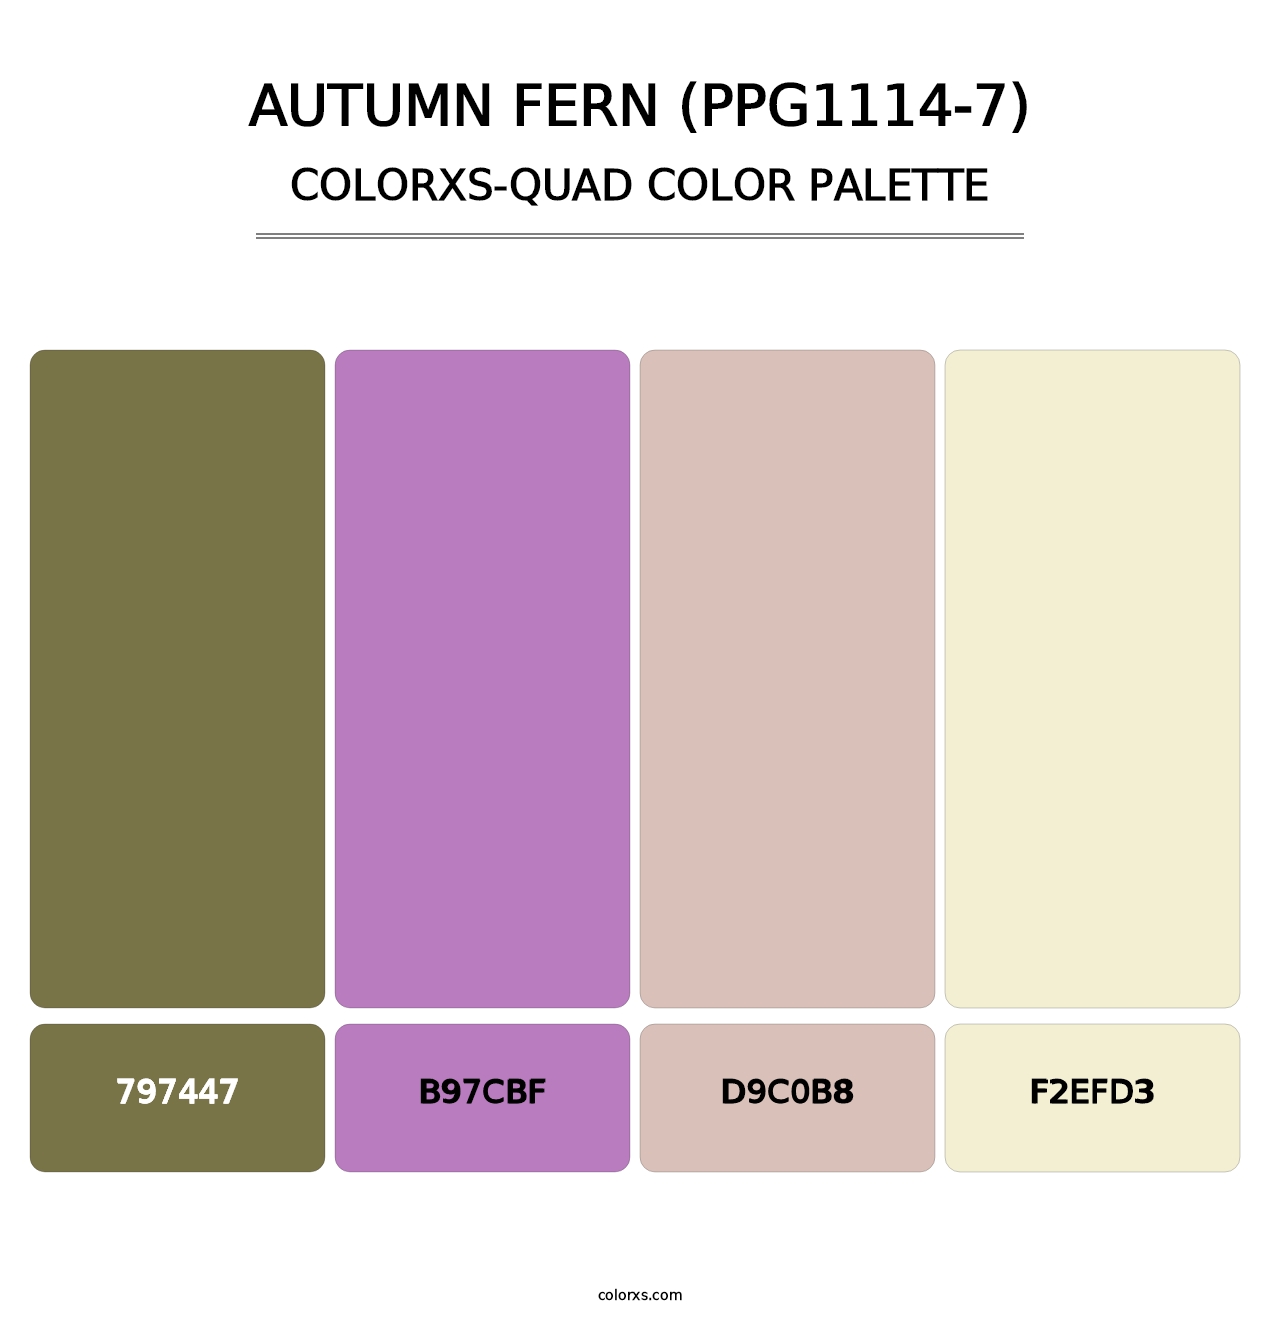 Autumn Fern (PPG1114-7) - Colorxs Quad Palette